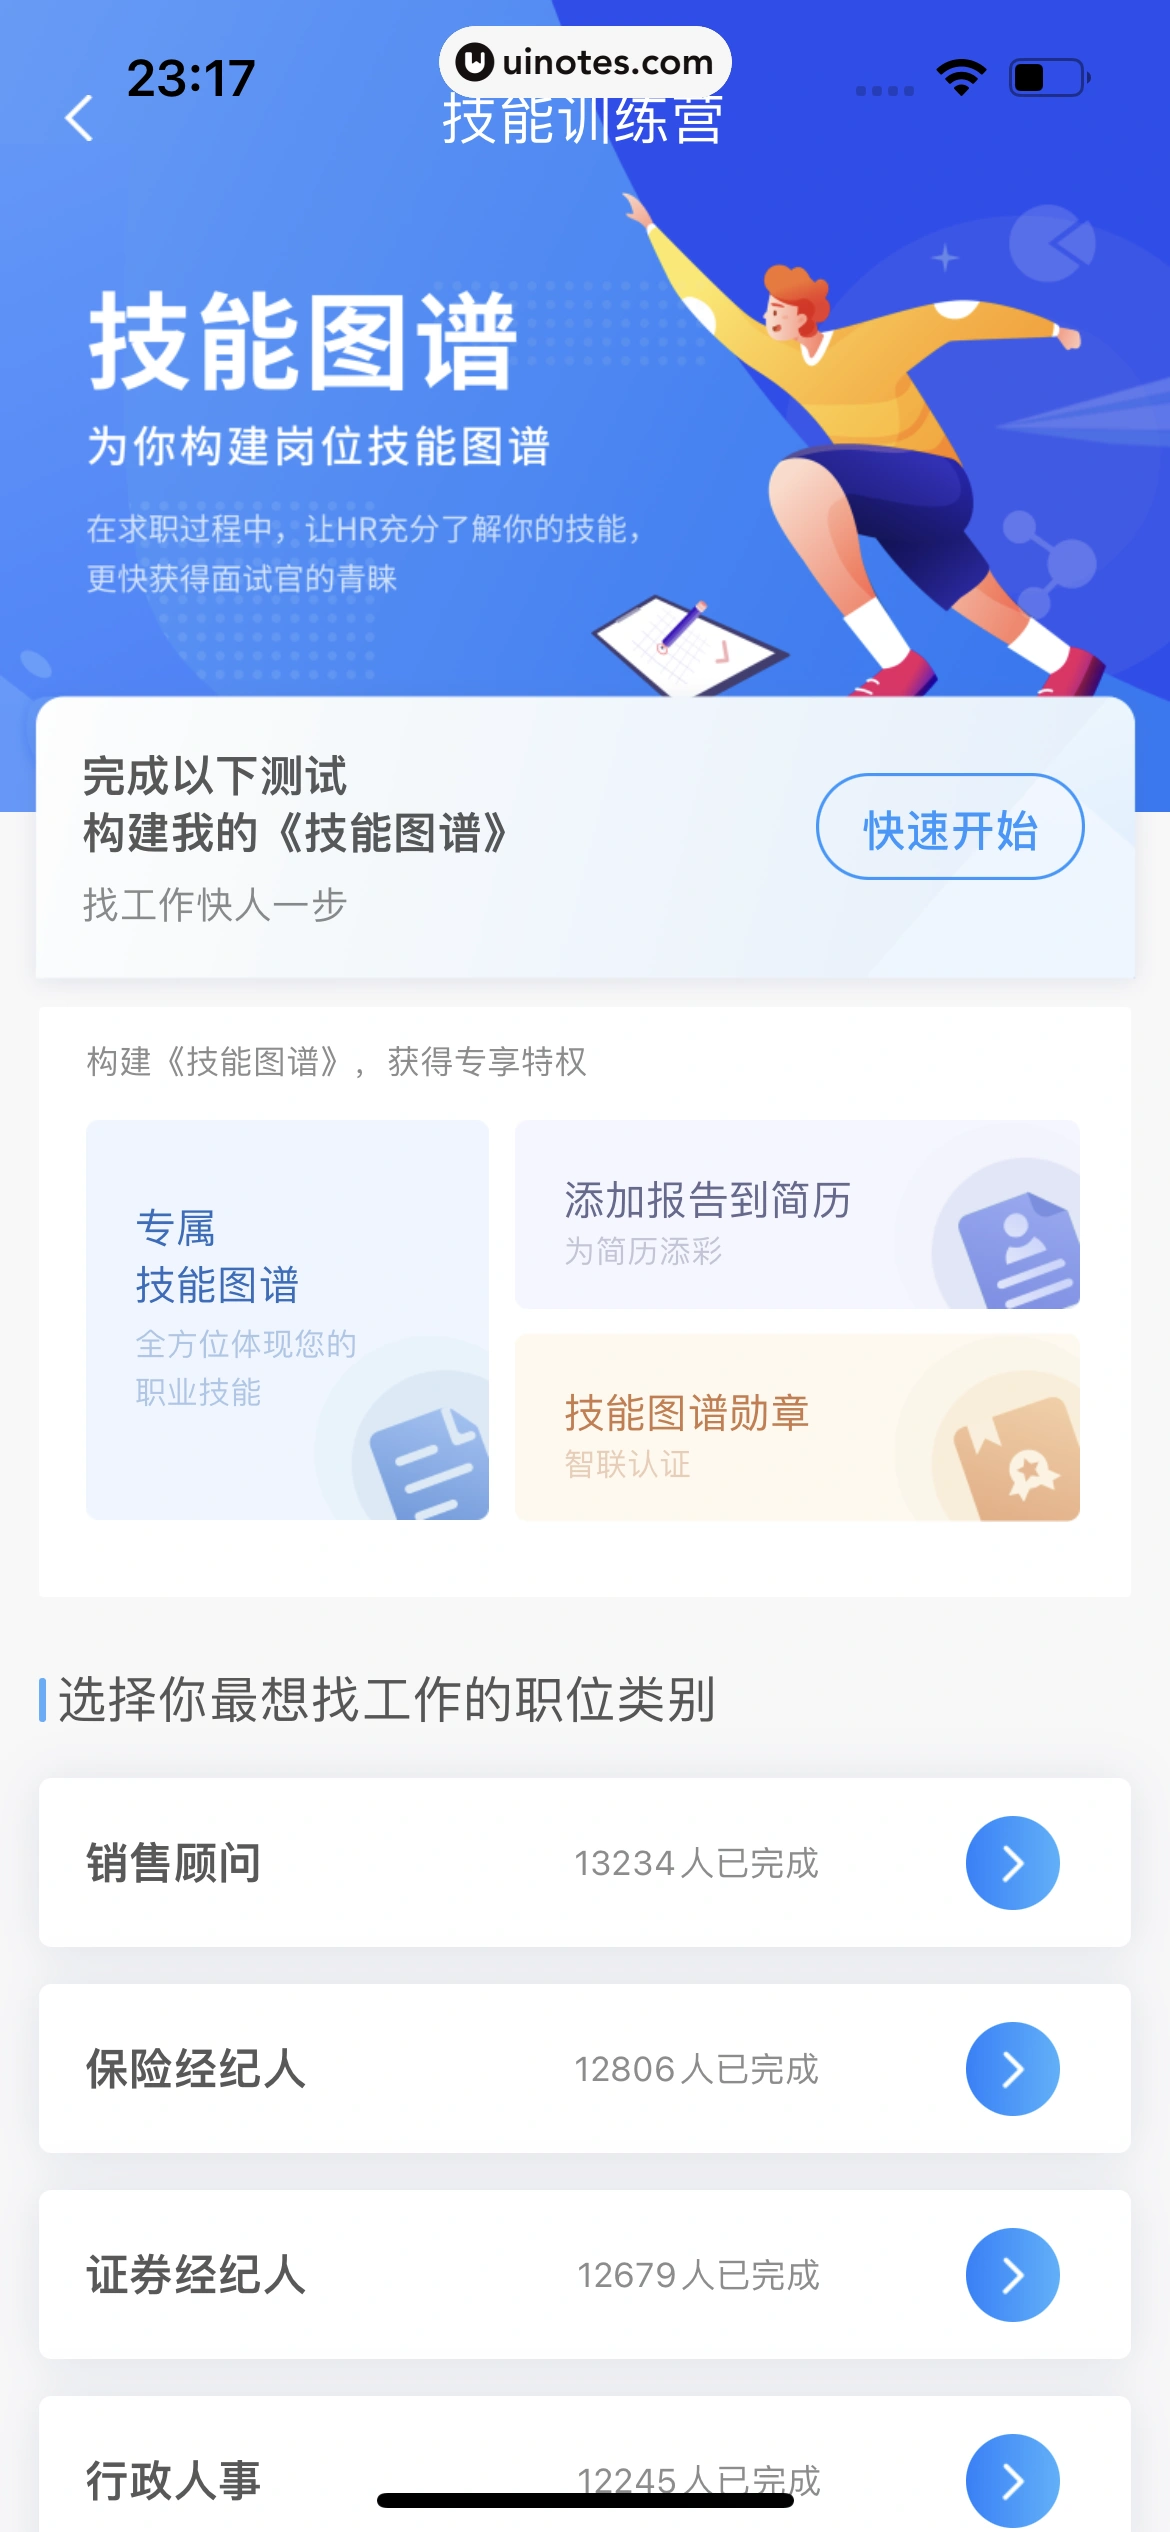 智联招聘 App 截图 549 - UI Notes